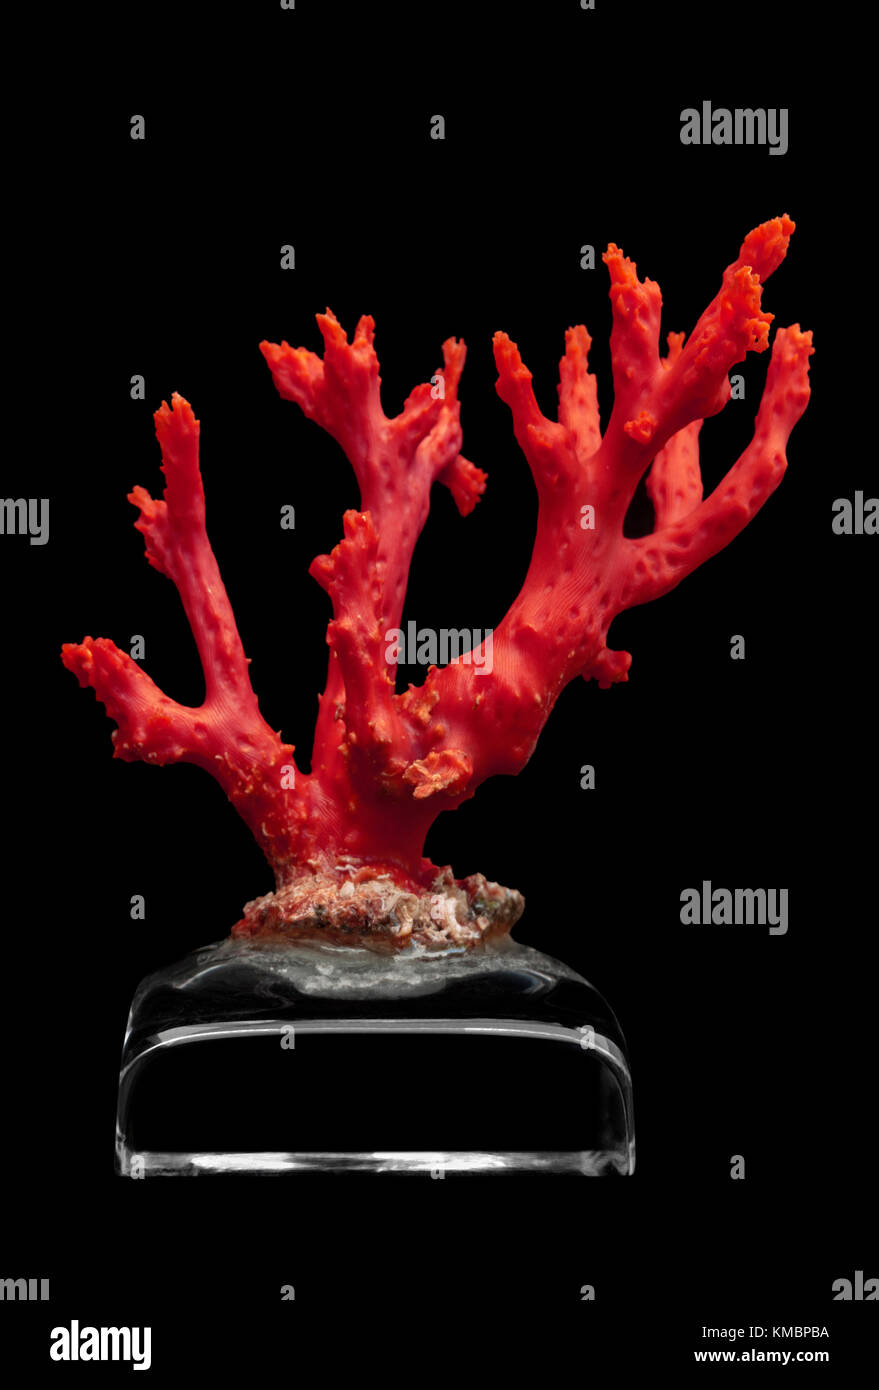 Rama de coral rojo del Mediterráneo (Corallium rubrum) que se muestra sobre una base de cristal. Este coral está hecho de carbonato de cal de color rojo. Foto de stock